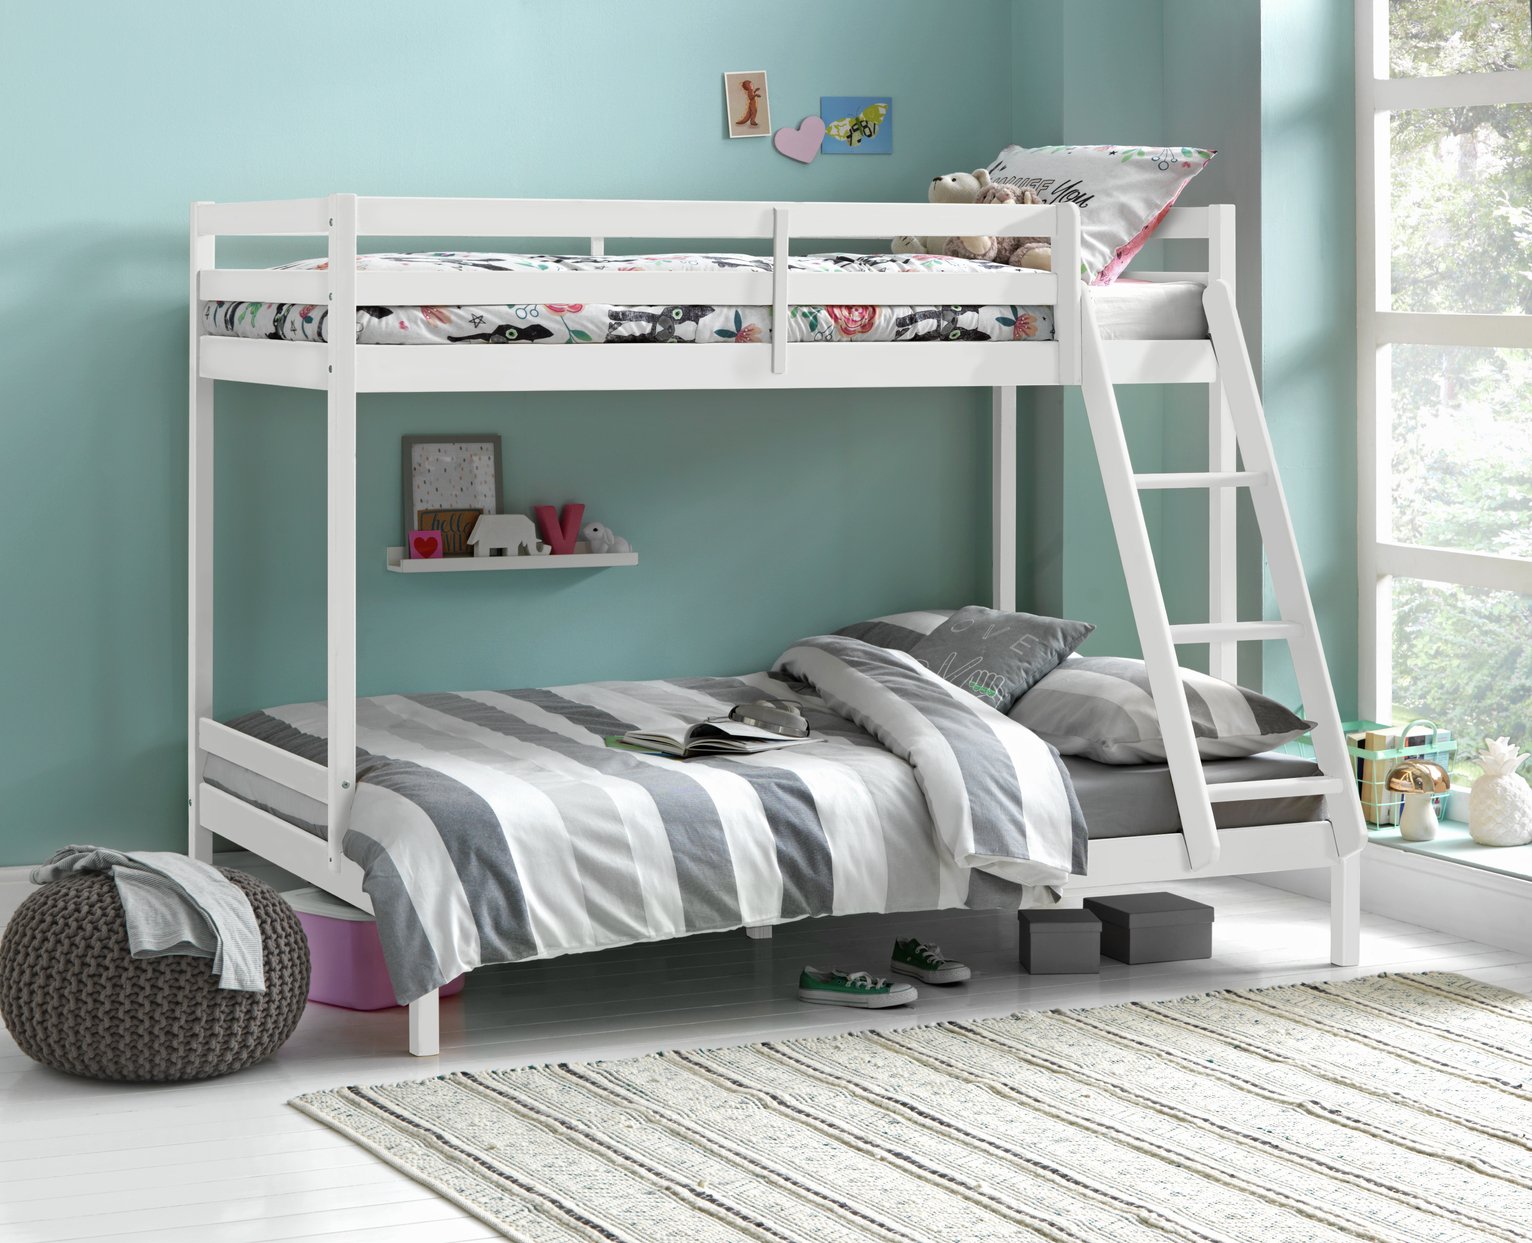 argos childrens bunk beds